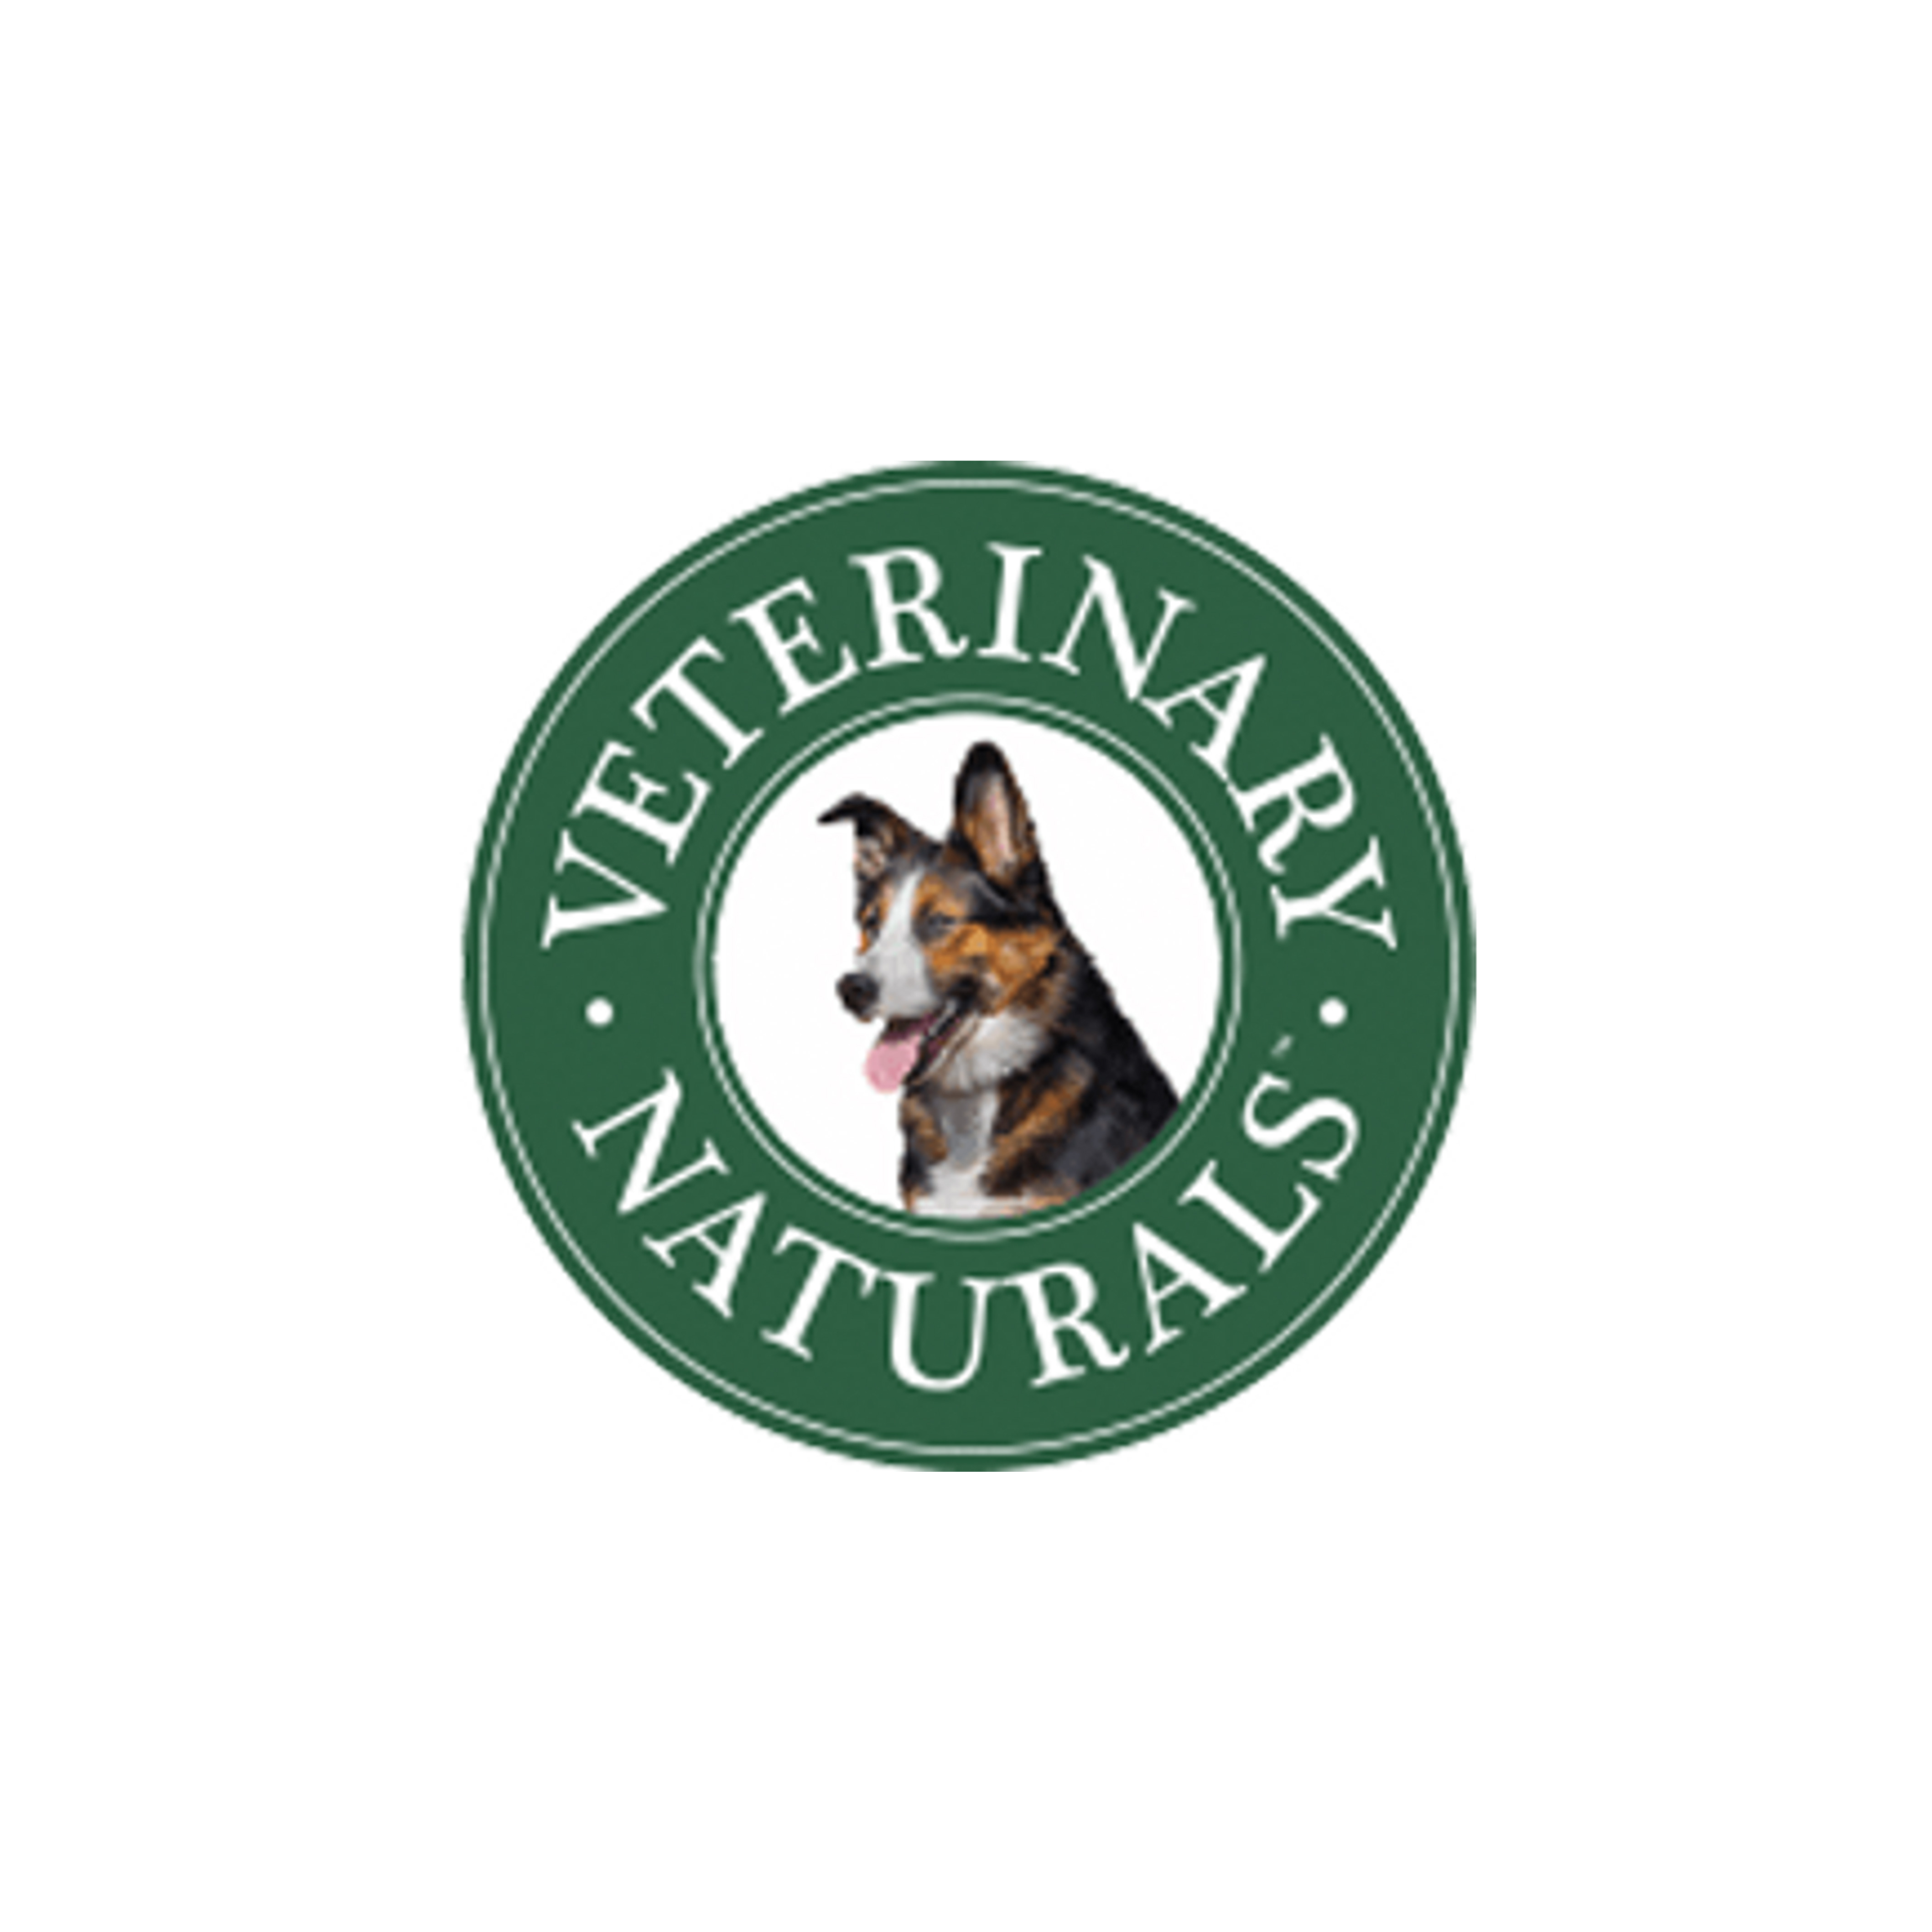 Vet Naturals logo